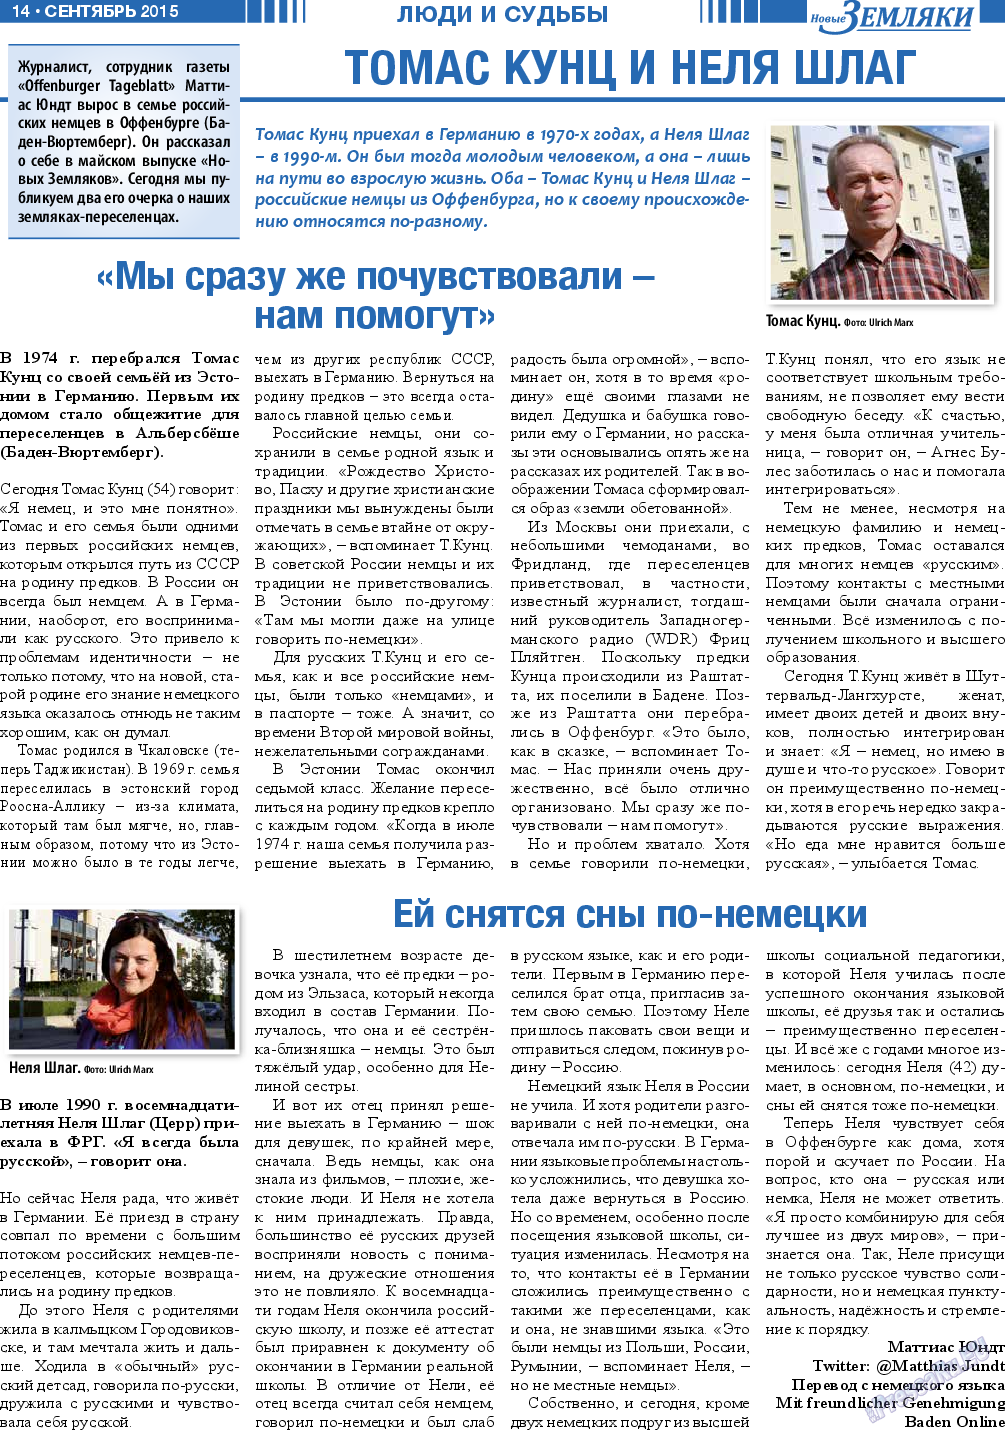 Новые Земляки (газета). 2015 год, номер 9, стр. 14